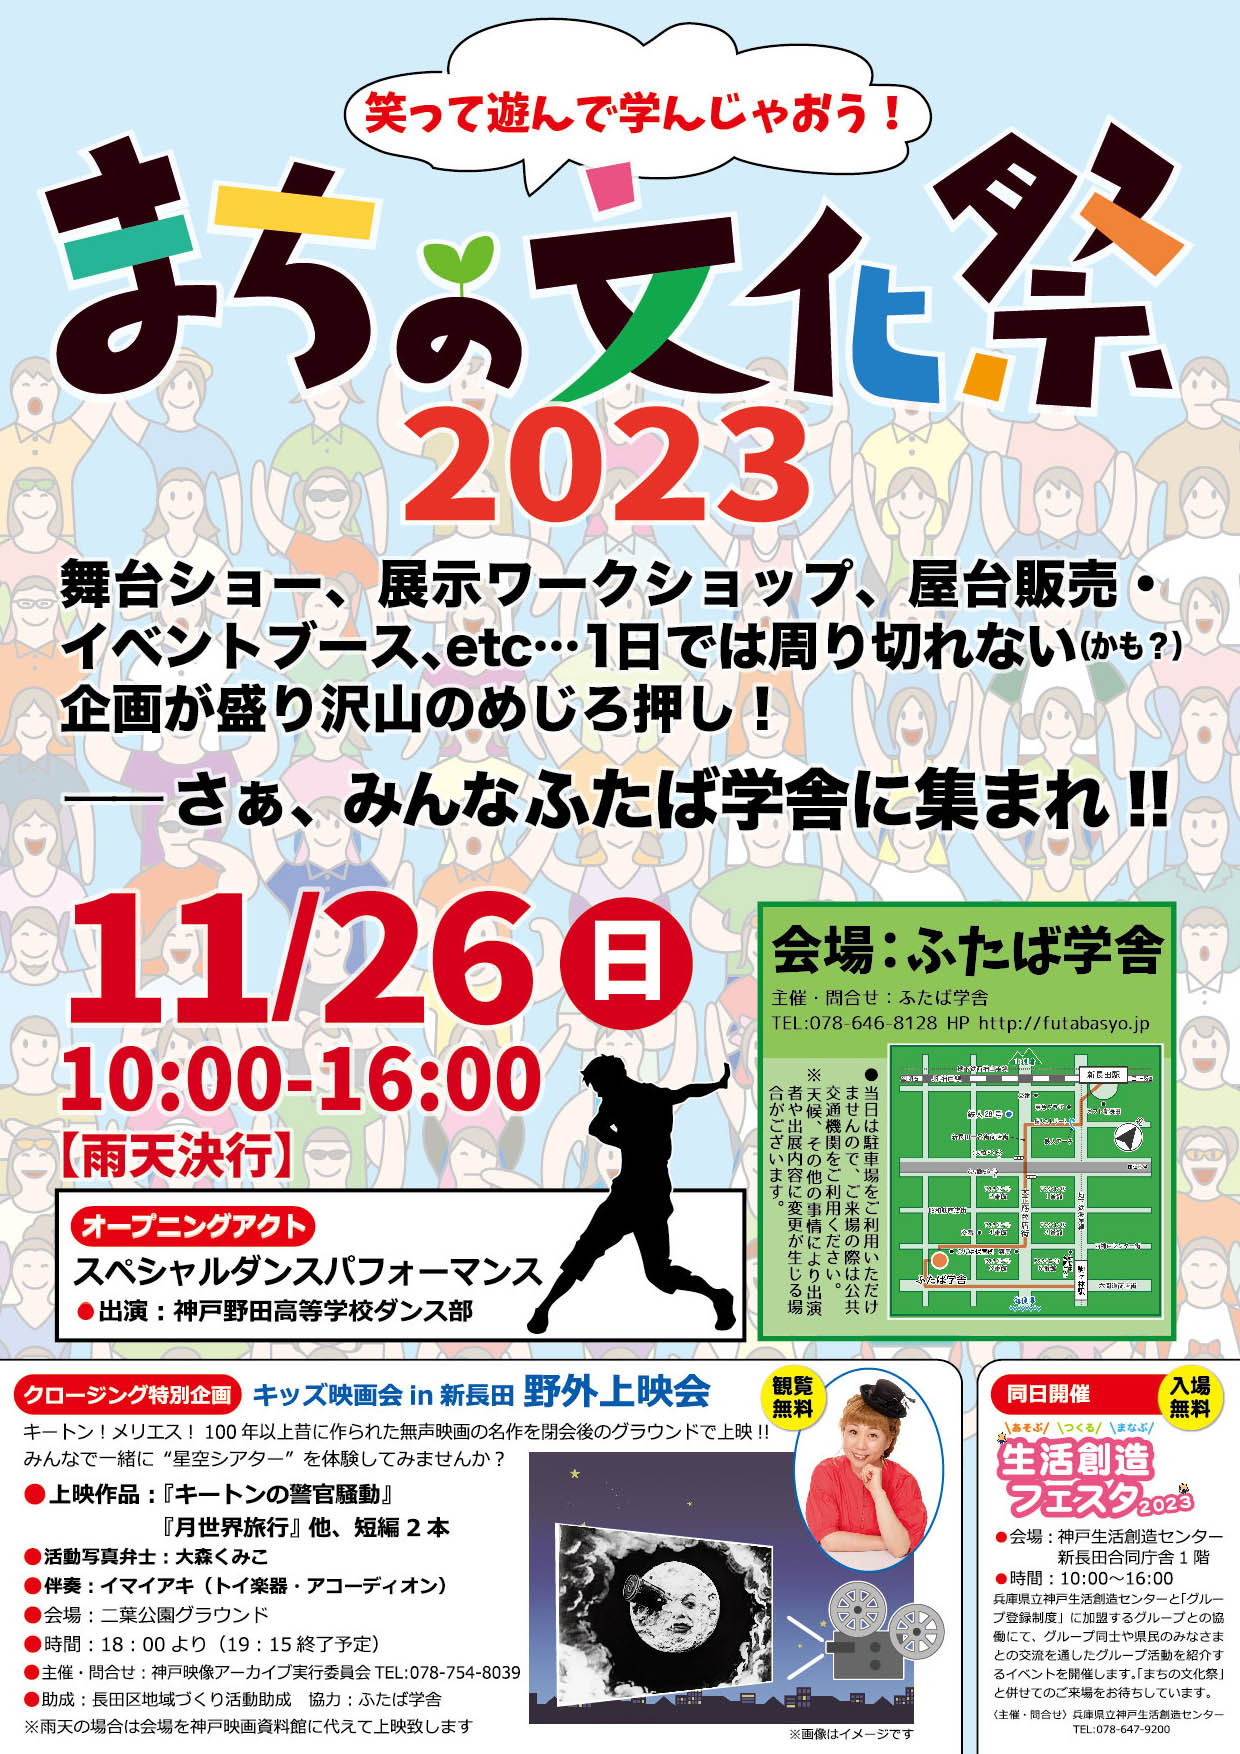 長田区で11月に開催される「まちの文化祭」